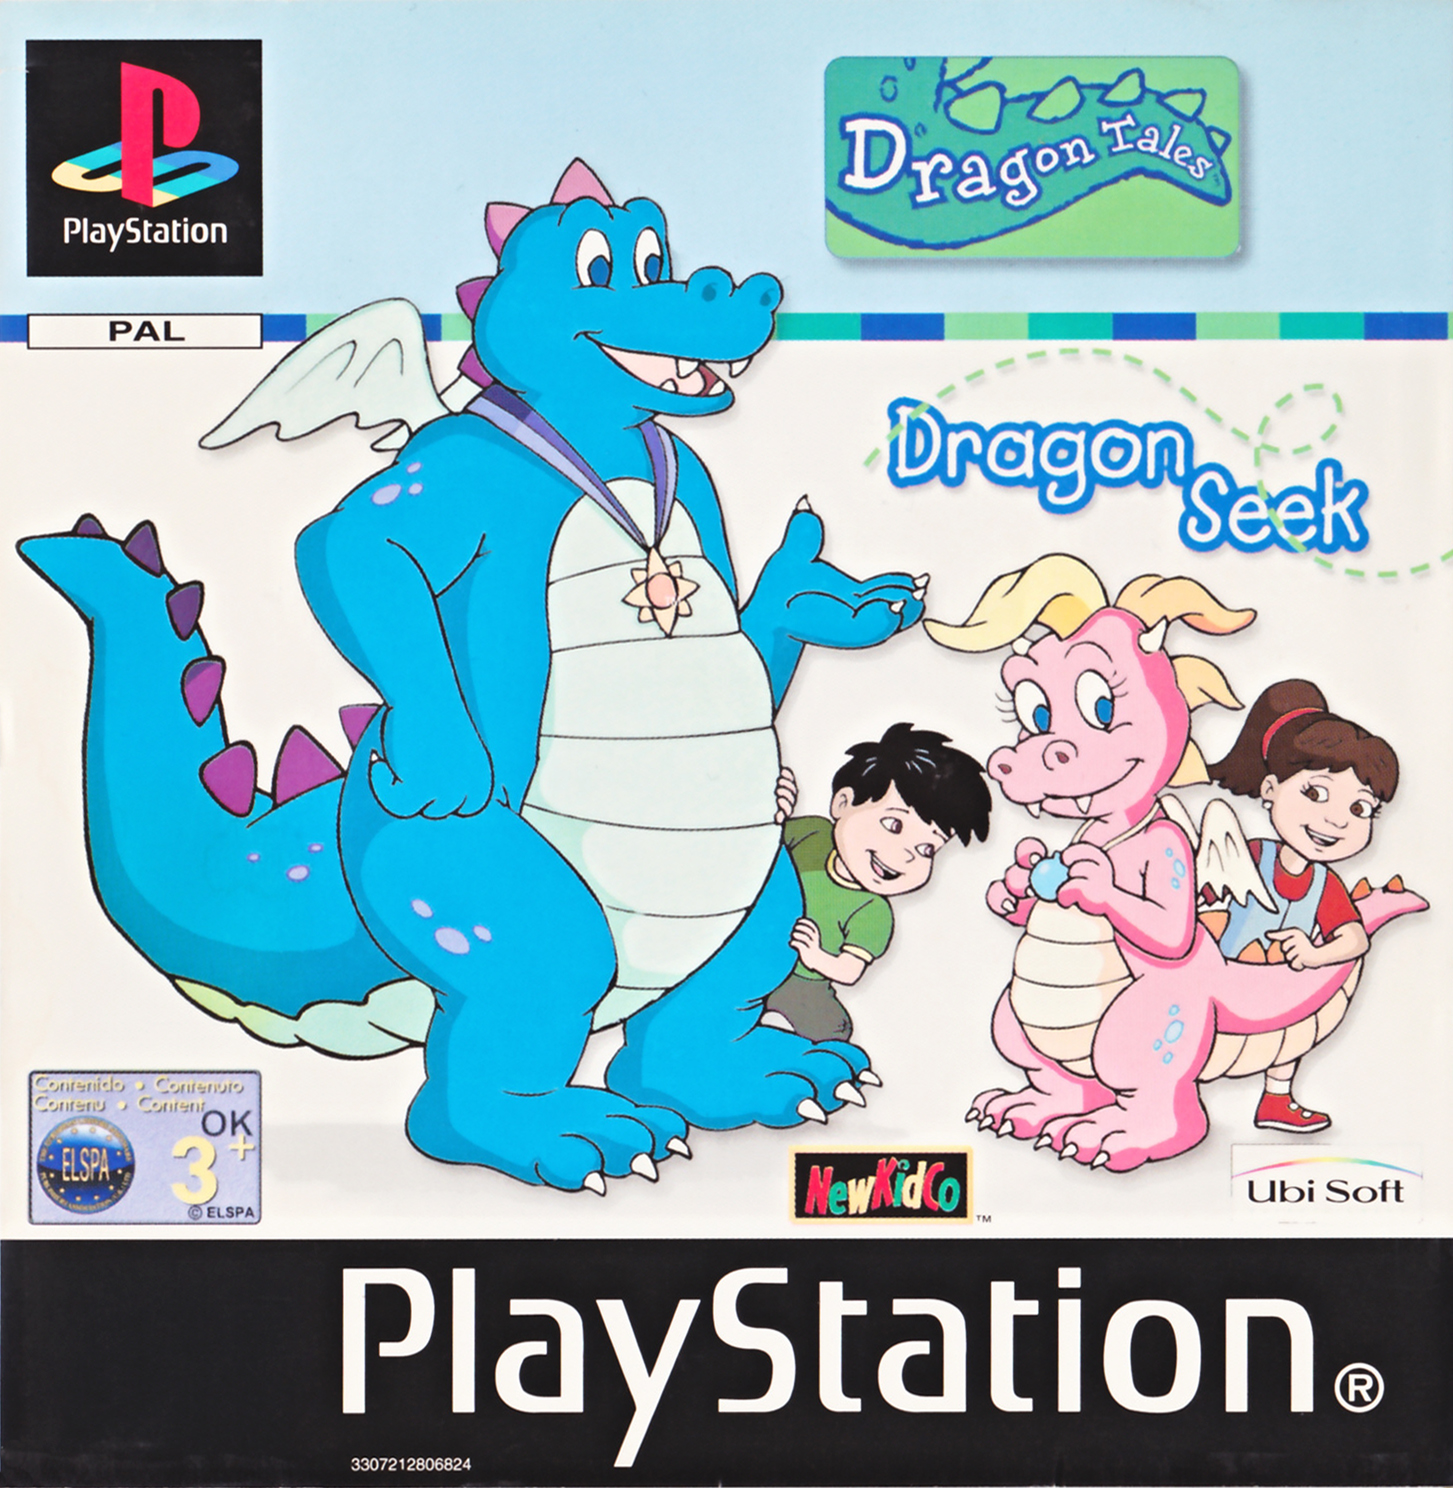 Dragon Tales - Dragon Seek PSX cover.